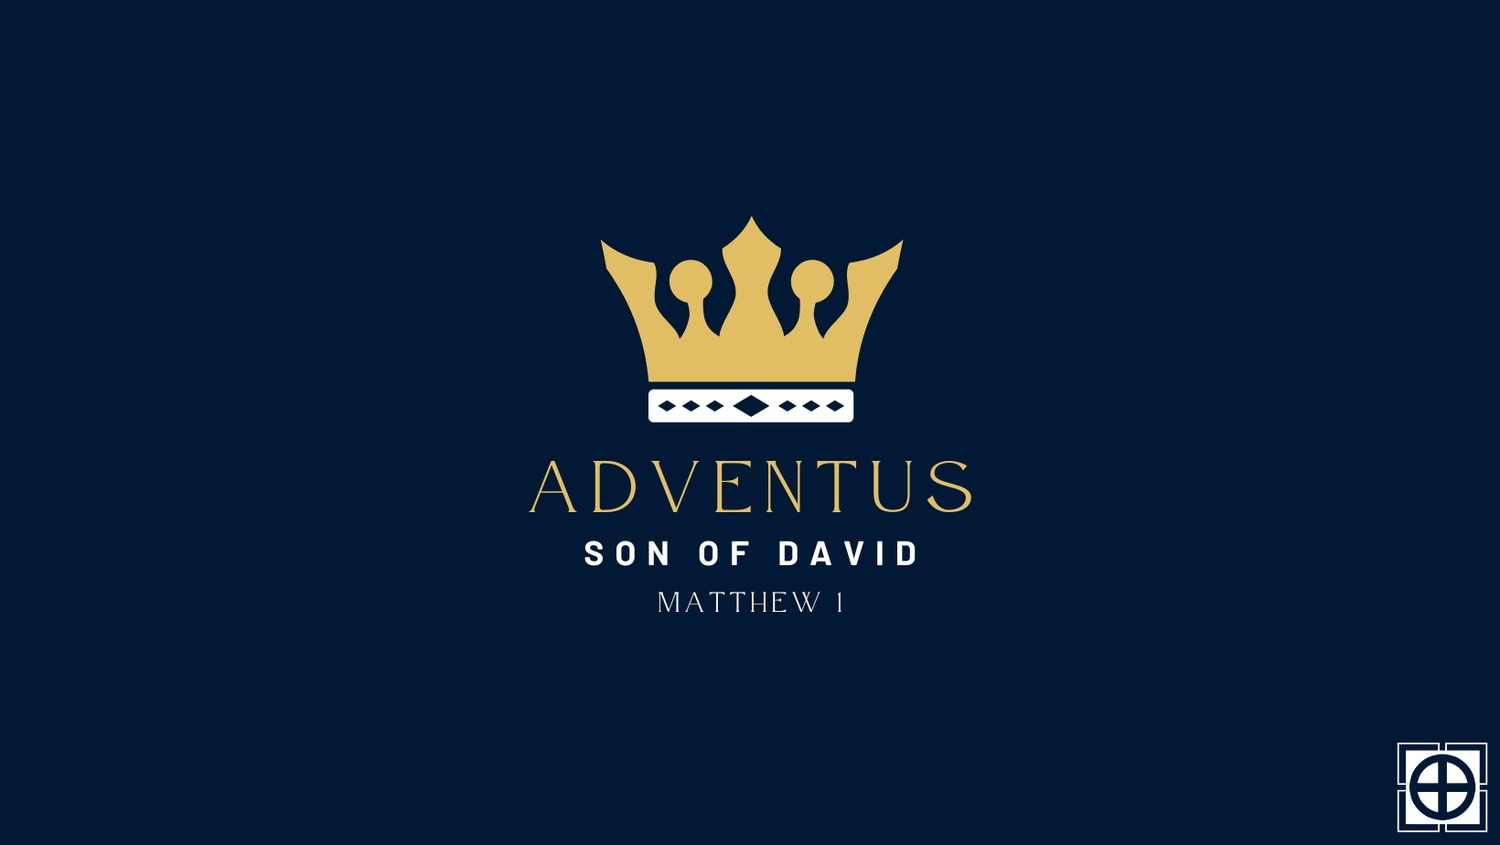 Matthew 1 - "King Jesus: Son of David"